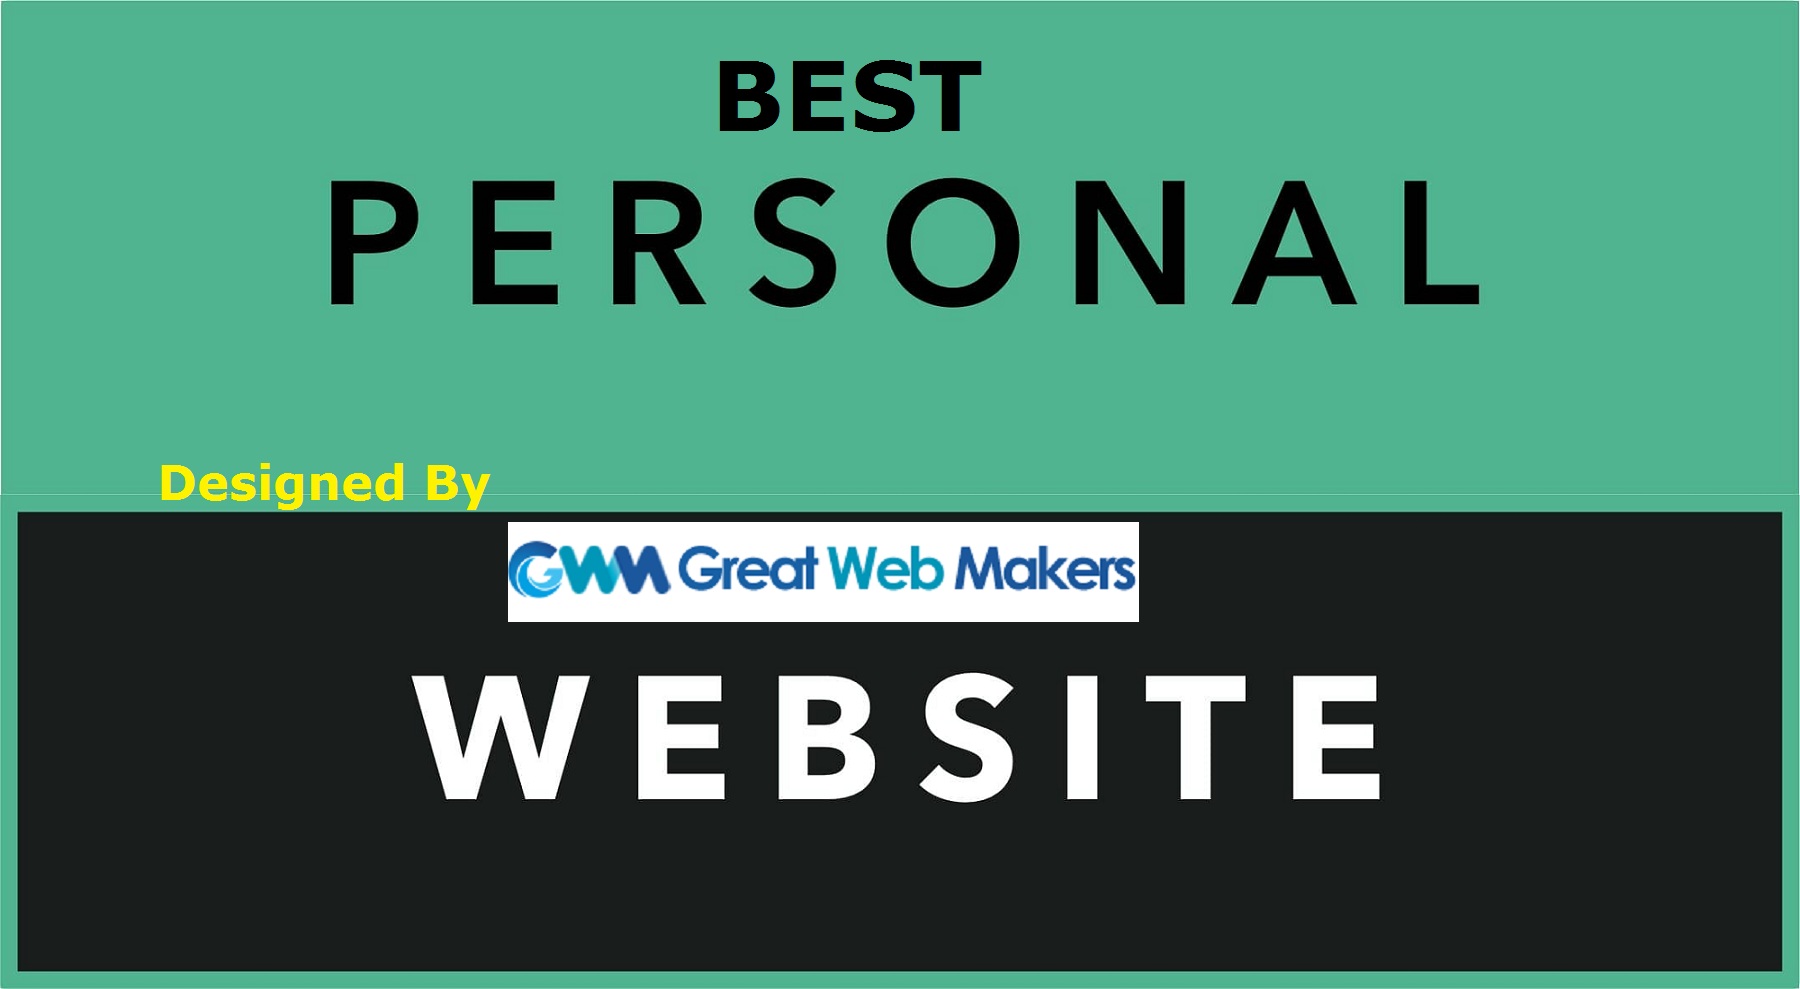 Best Personal Website